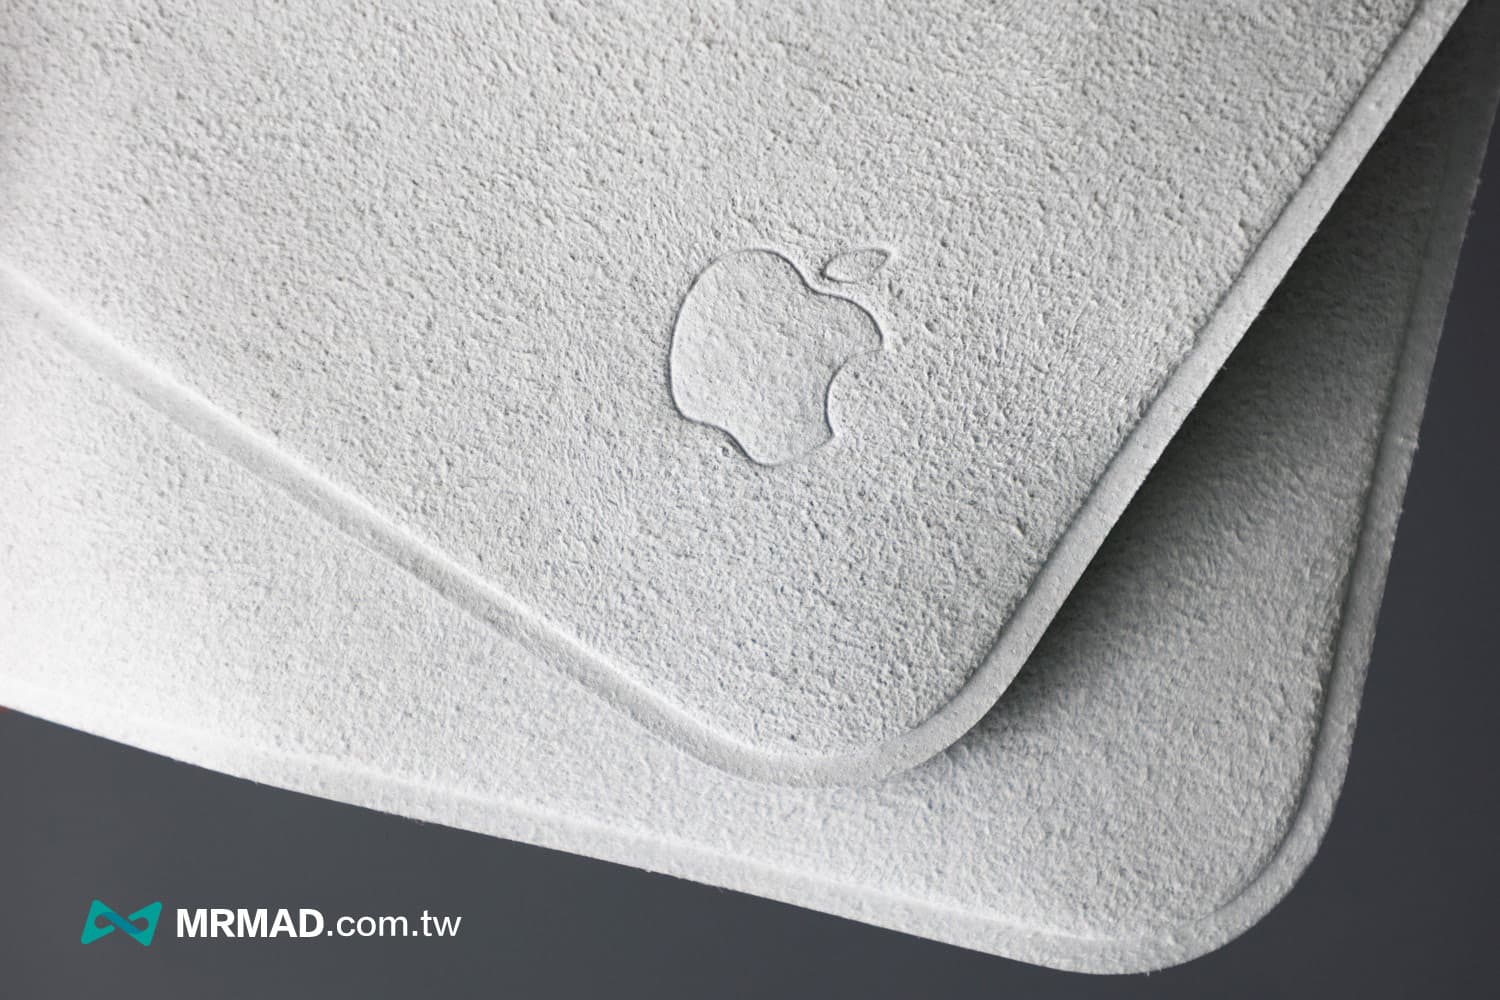 Apple擦拭布材質、尺寸與防水效果